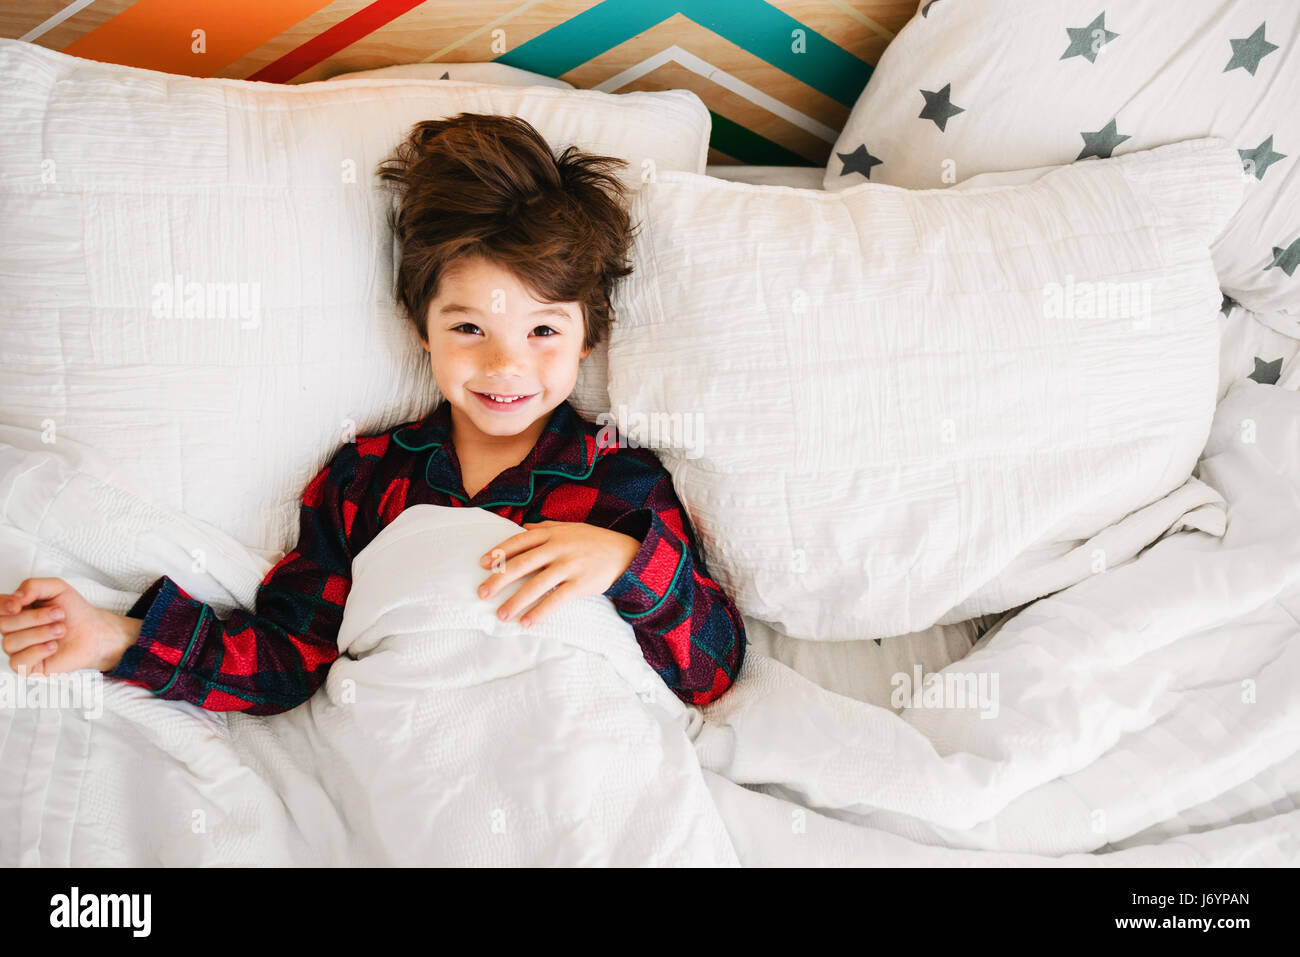 Retrato de un sonriente niño acostado en la cama Foto de stock